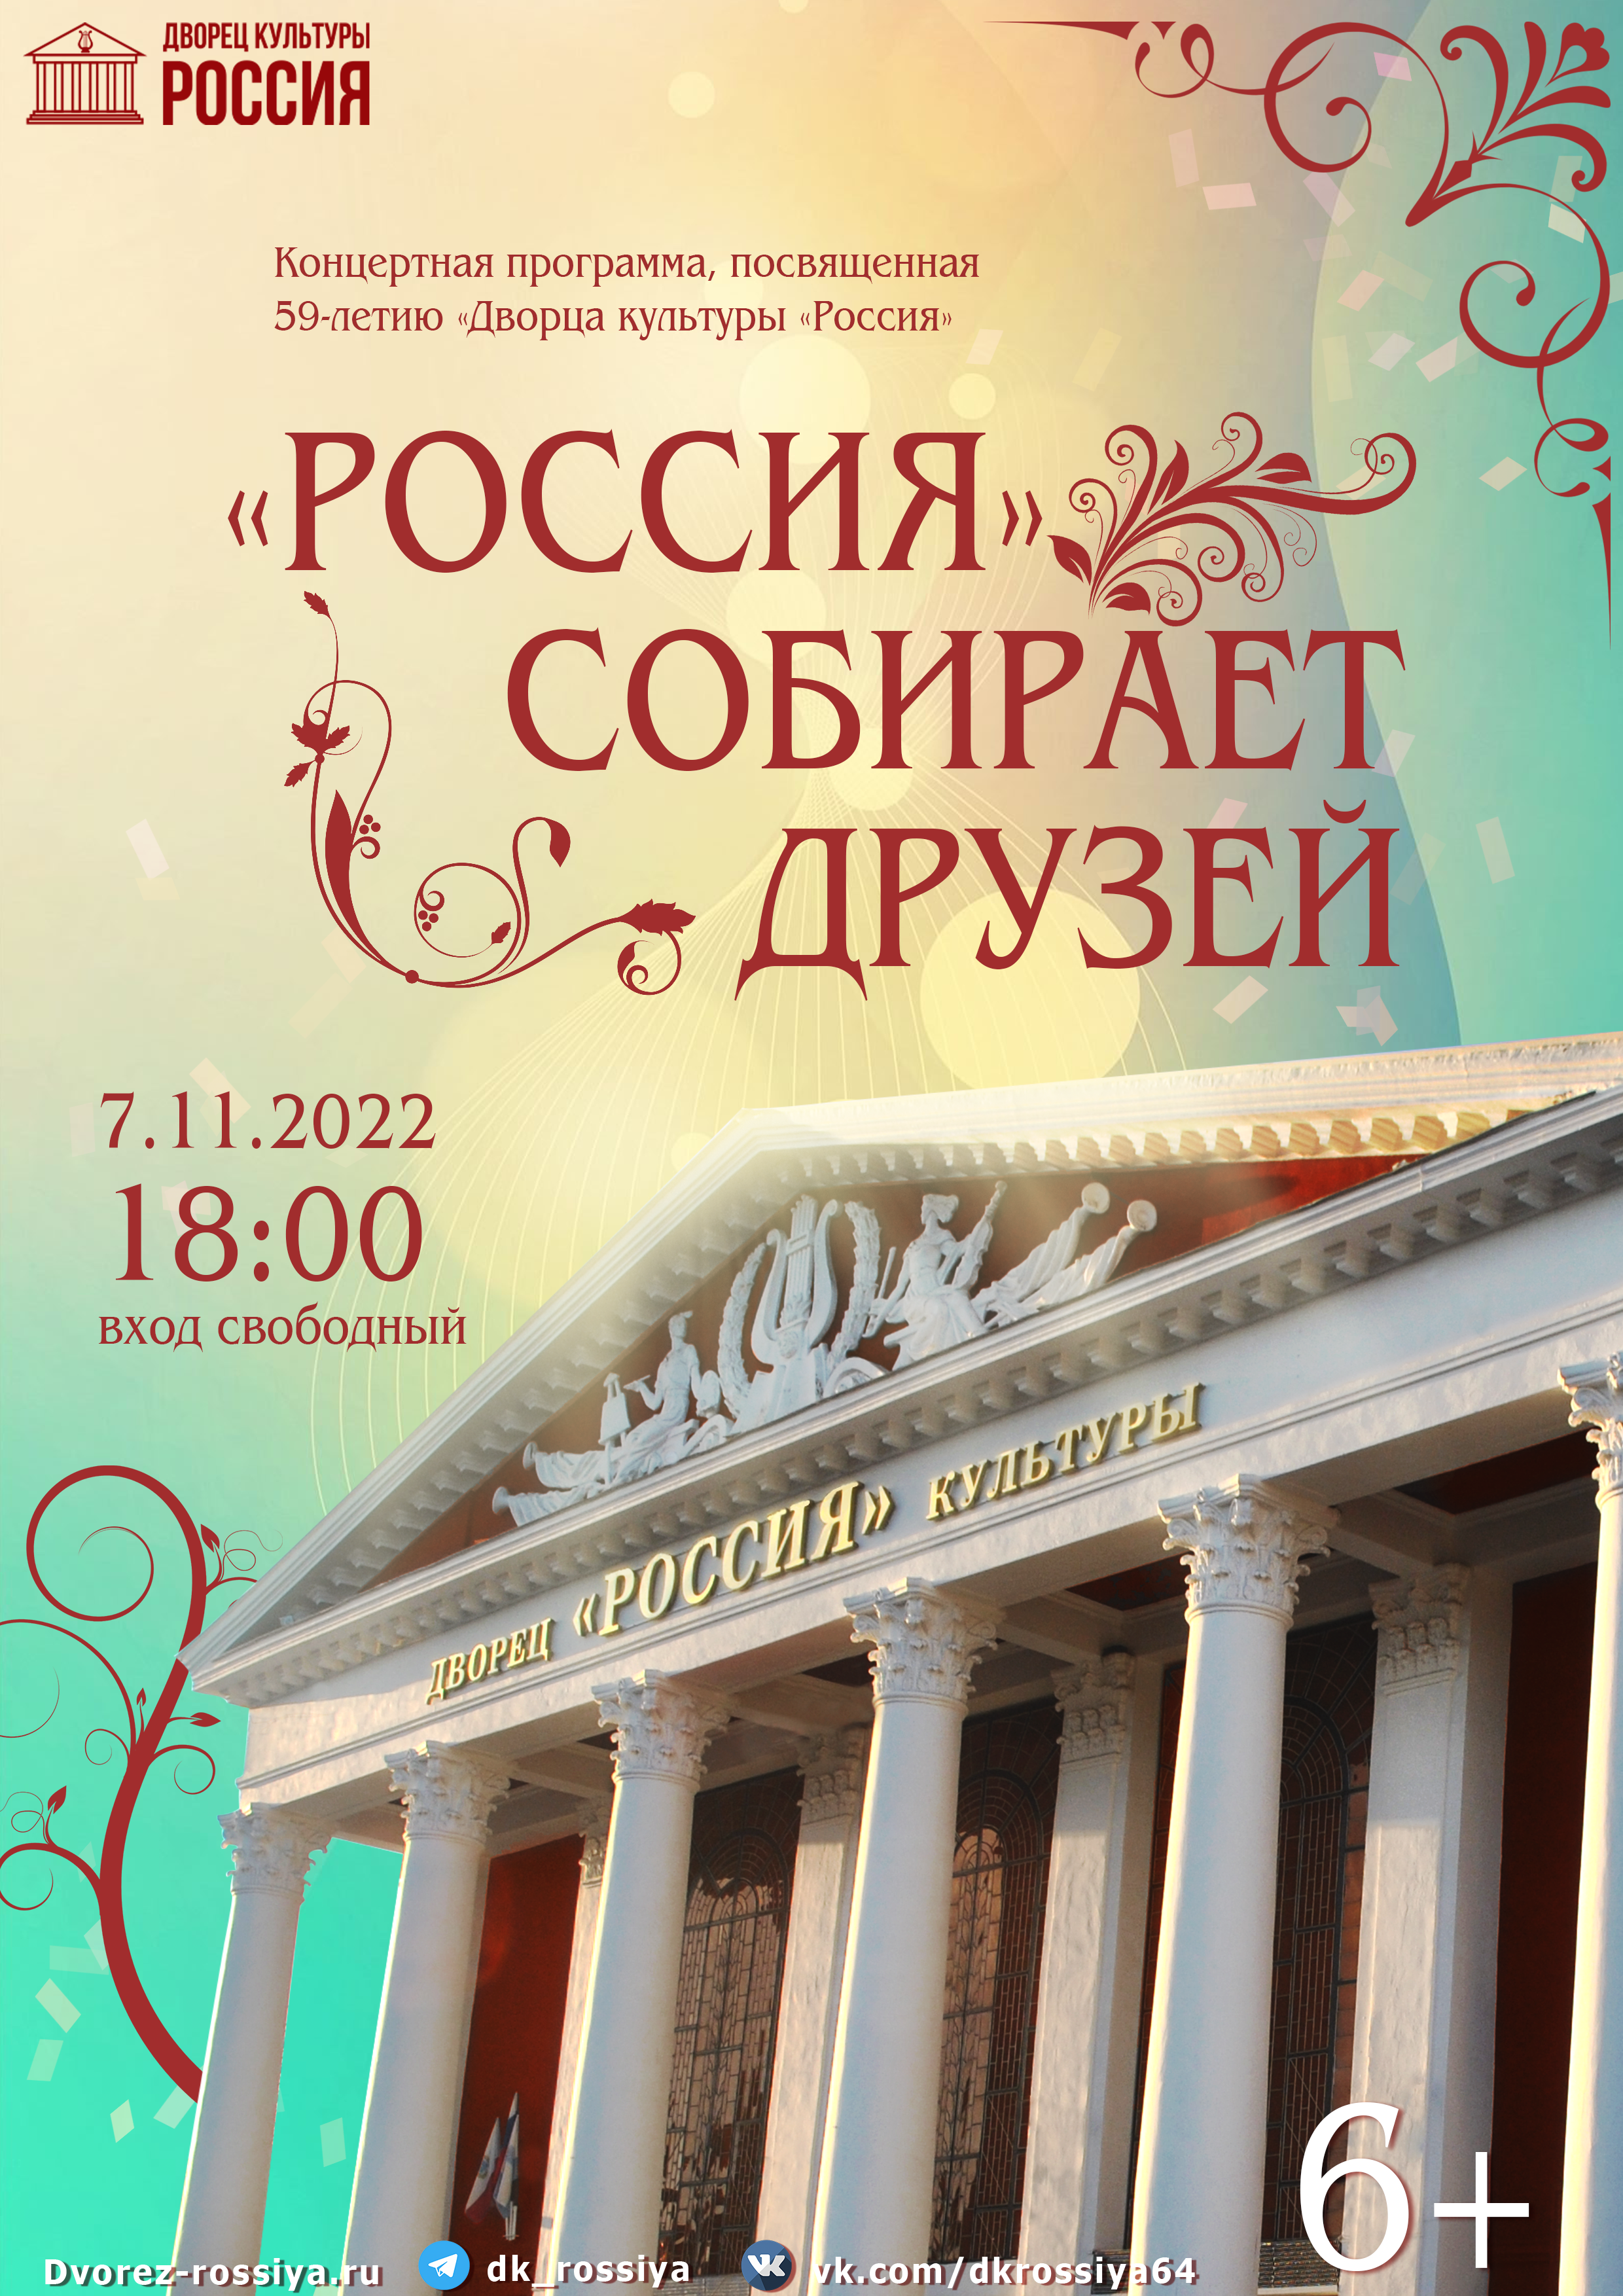 Концертная программа «Россия собирает друзей»